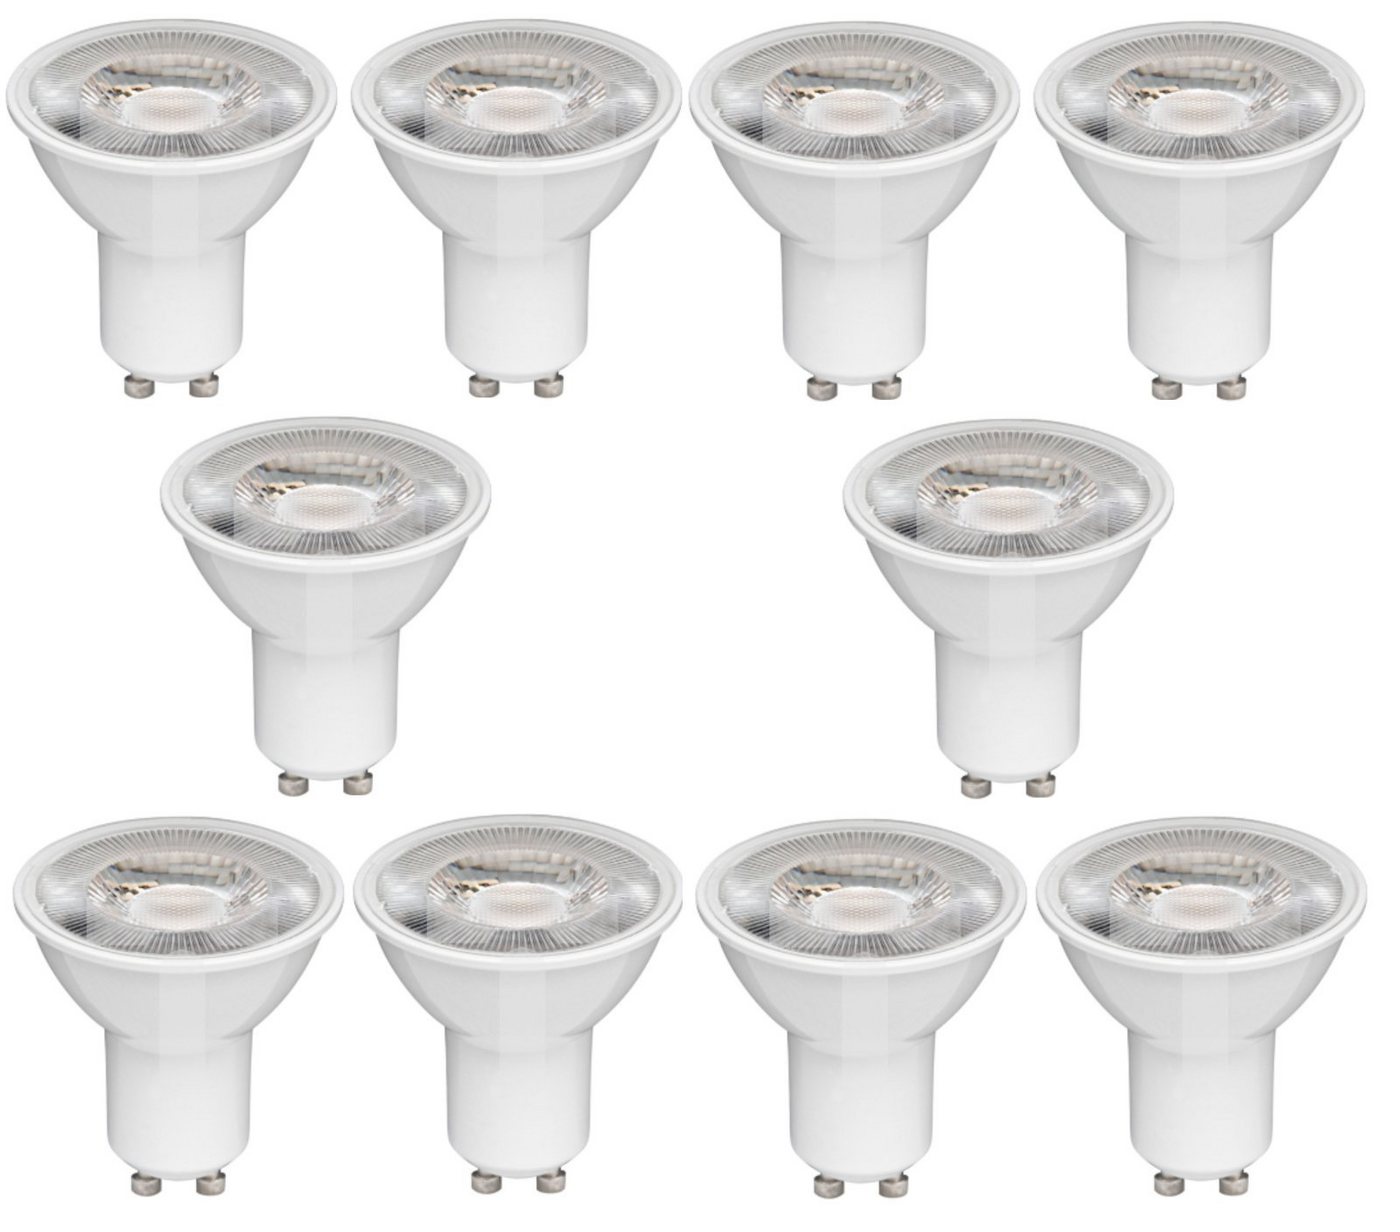 Osram LED Deckenspot GU10 Warmweiß 60° Spot 35W PAR 16 Leuchtmittel 2700K 230lm [10er], LED fest integriert, Warmweiß, Energieeffizient, Energiesparend, CRI > 80 von Osram